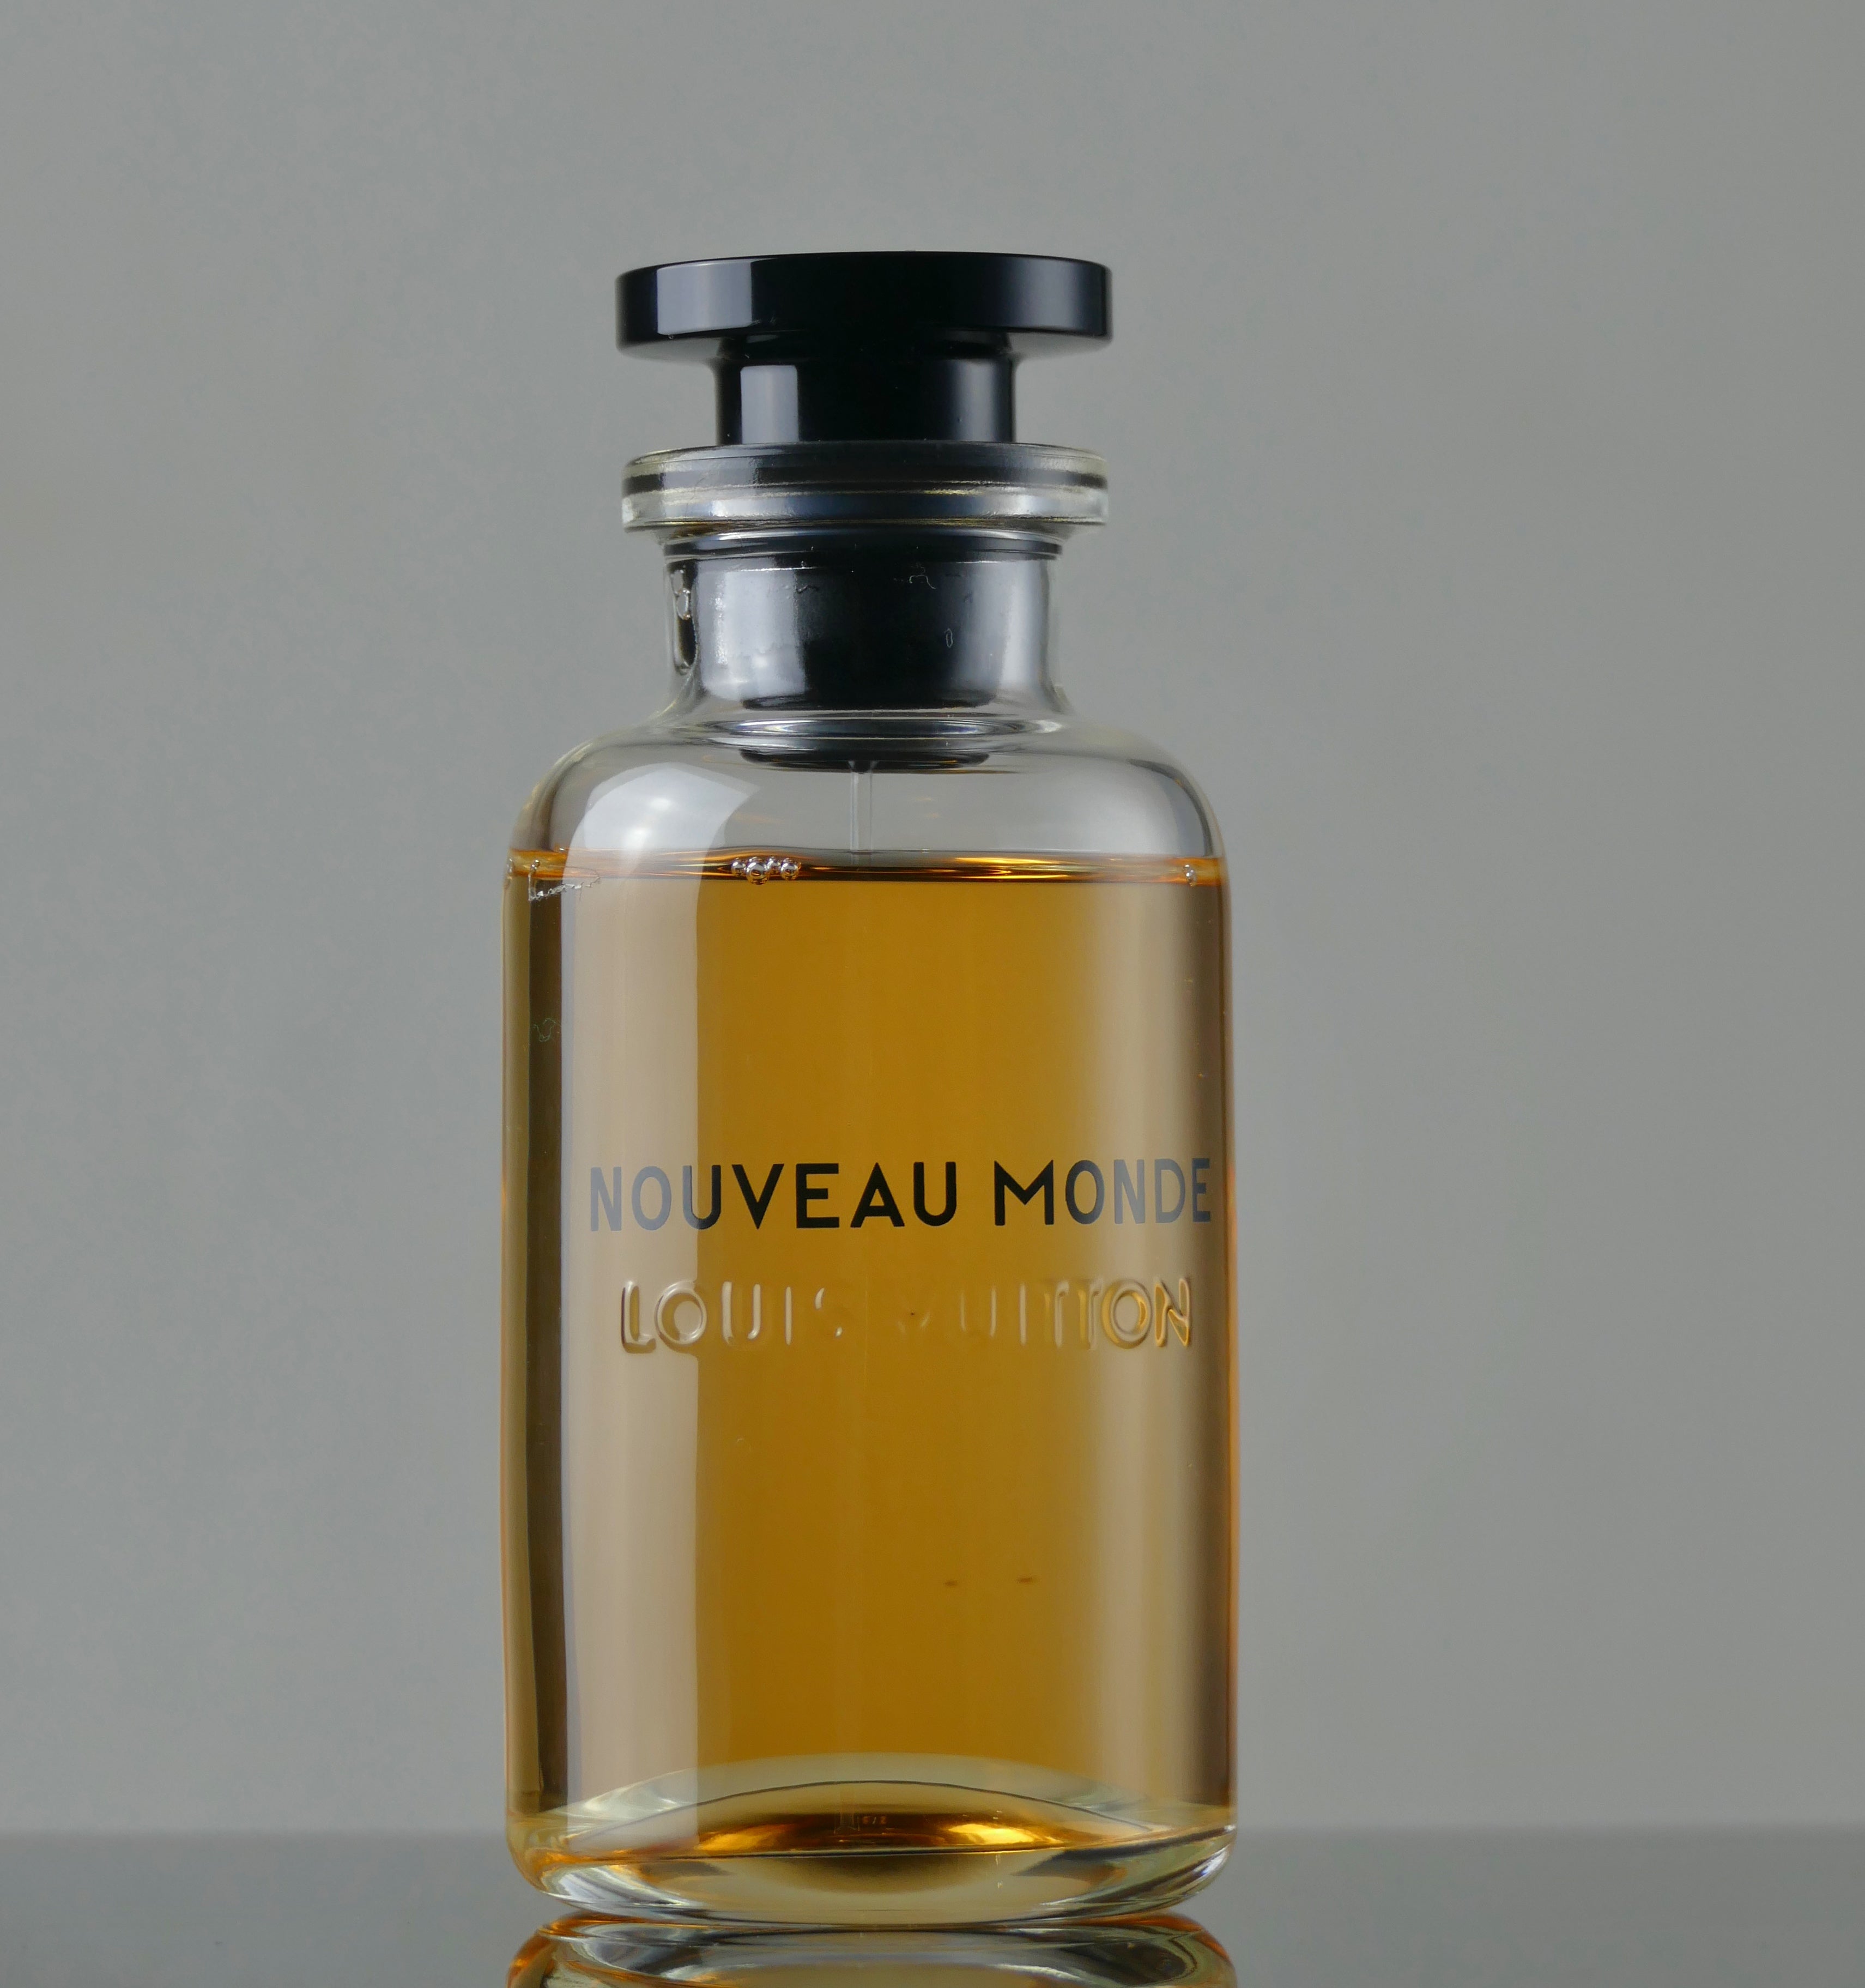 Louis Vuitton Nouveau Monde Eau De Parfum